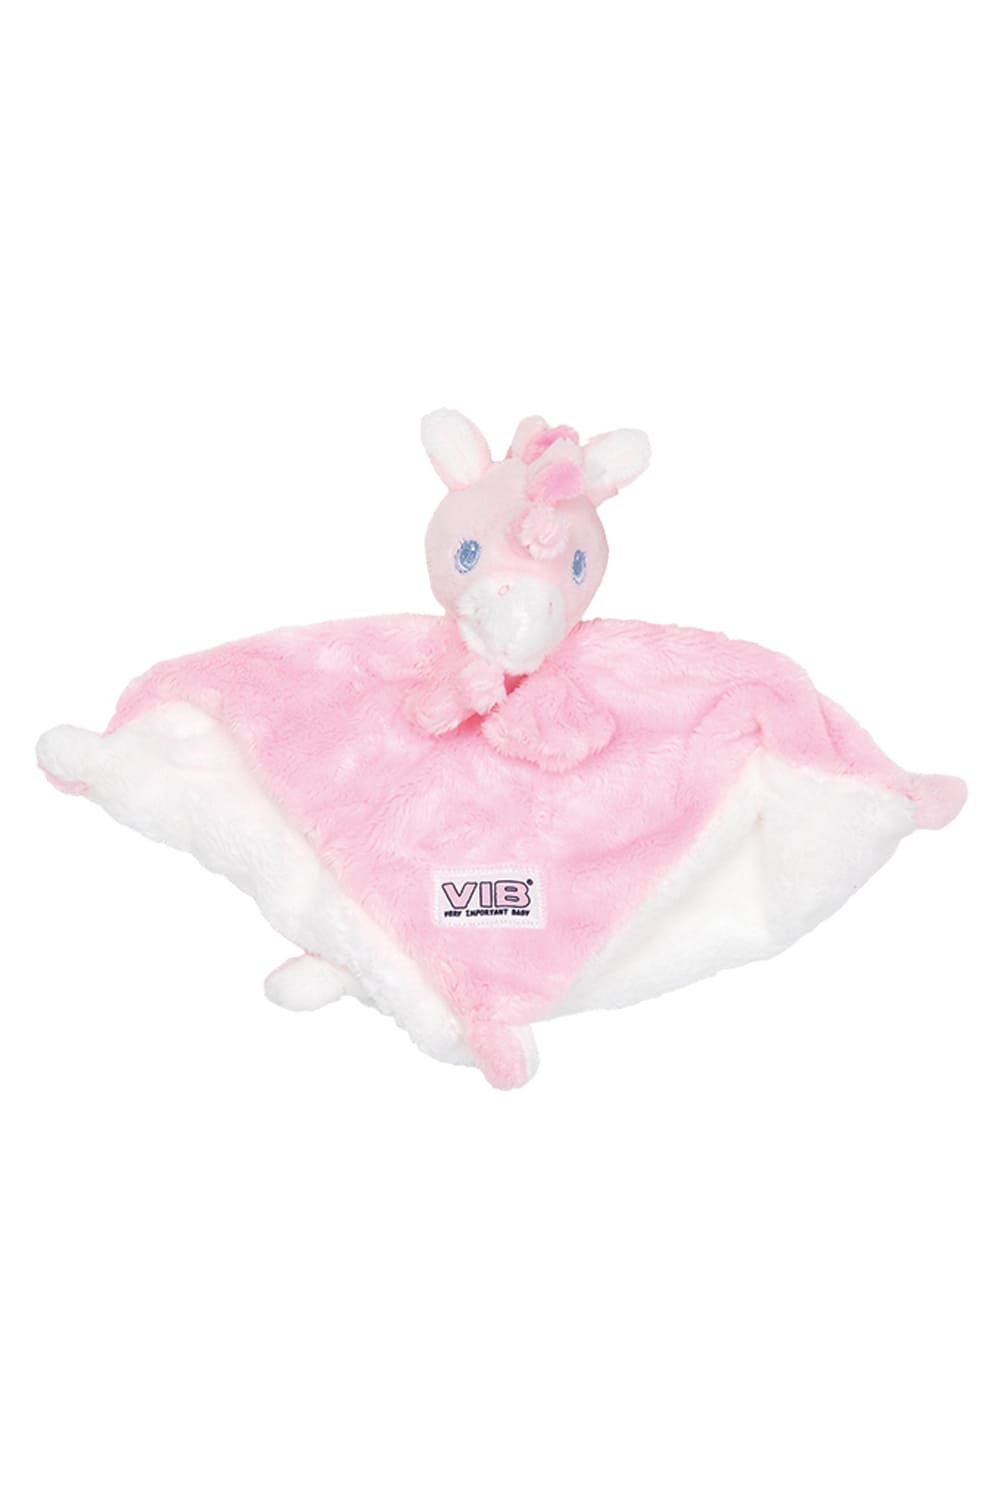 Dieses Einhorn Schmusetuch ist von der Marke: VIB – Very Important Baby, qualitative und hochwertige Babyaccesoires. Das Einhorn ist in der Farbe rosa erhaeltlich. Plueschtier und Schmusetuch in einem vereint. Fuer kuschelige, troestende und wohltuende Momente fuer das Baby und das Kleinkind.